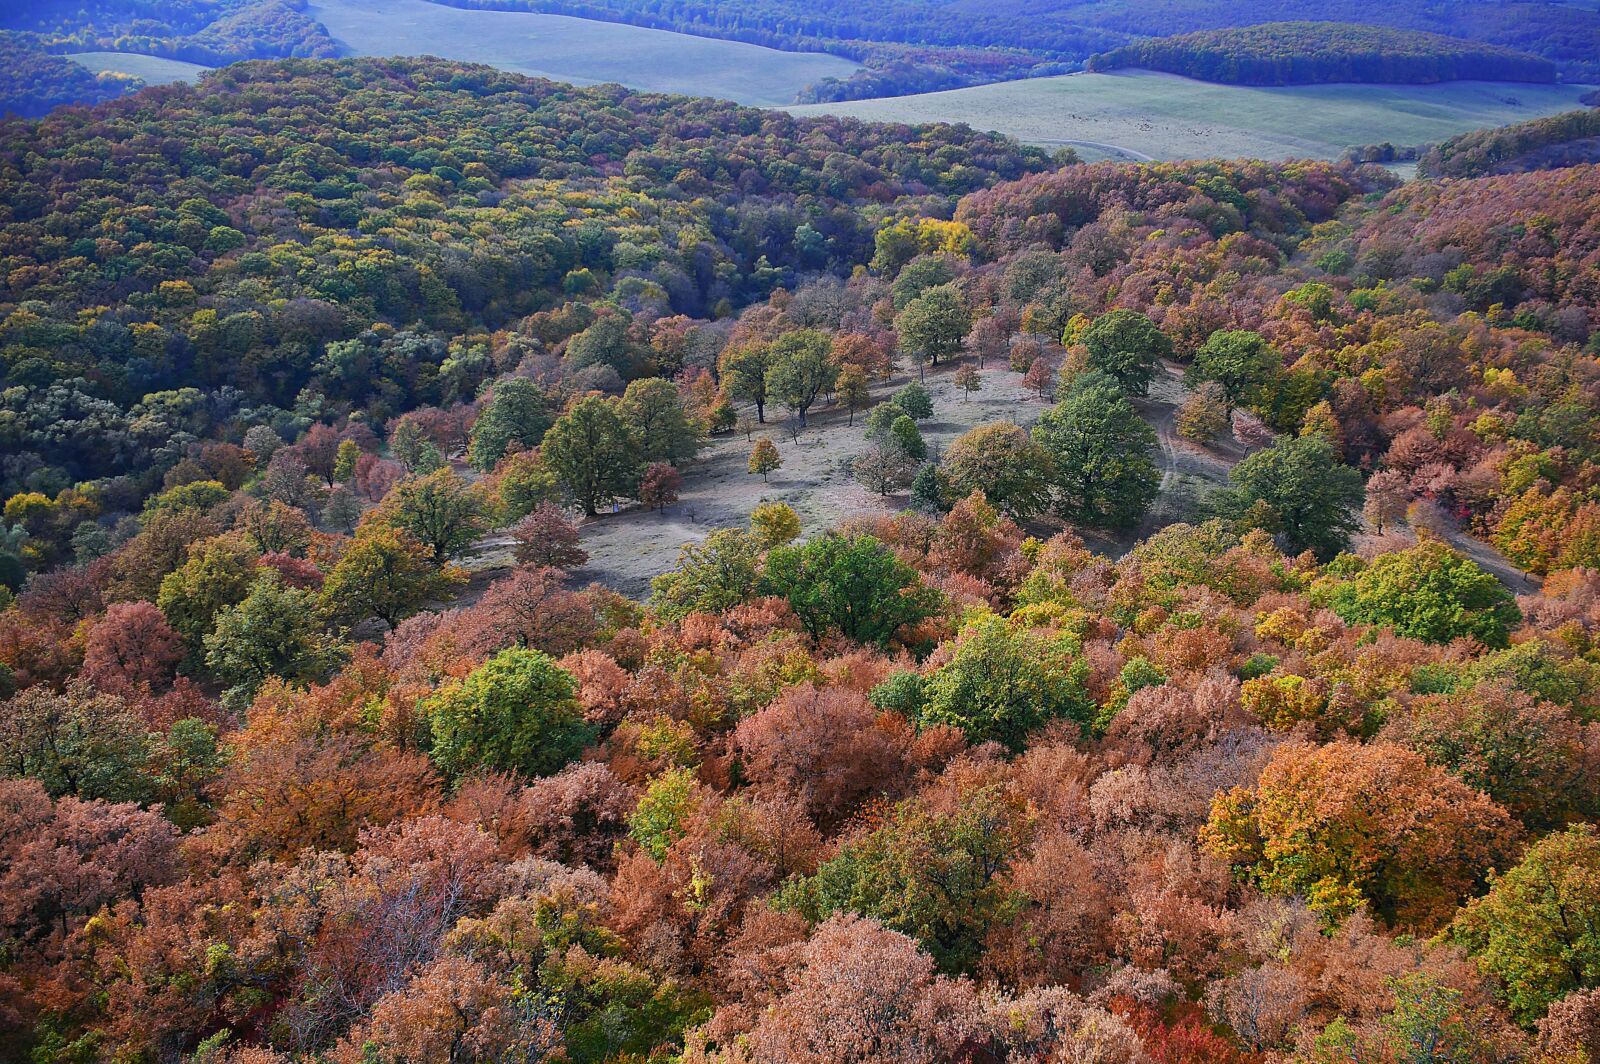 Nikon D3200 sample photo. Landscape, autumn, autumn landscape photography